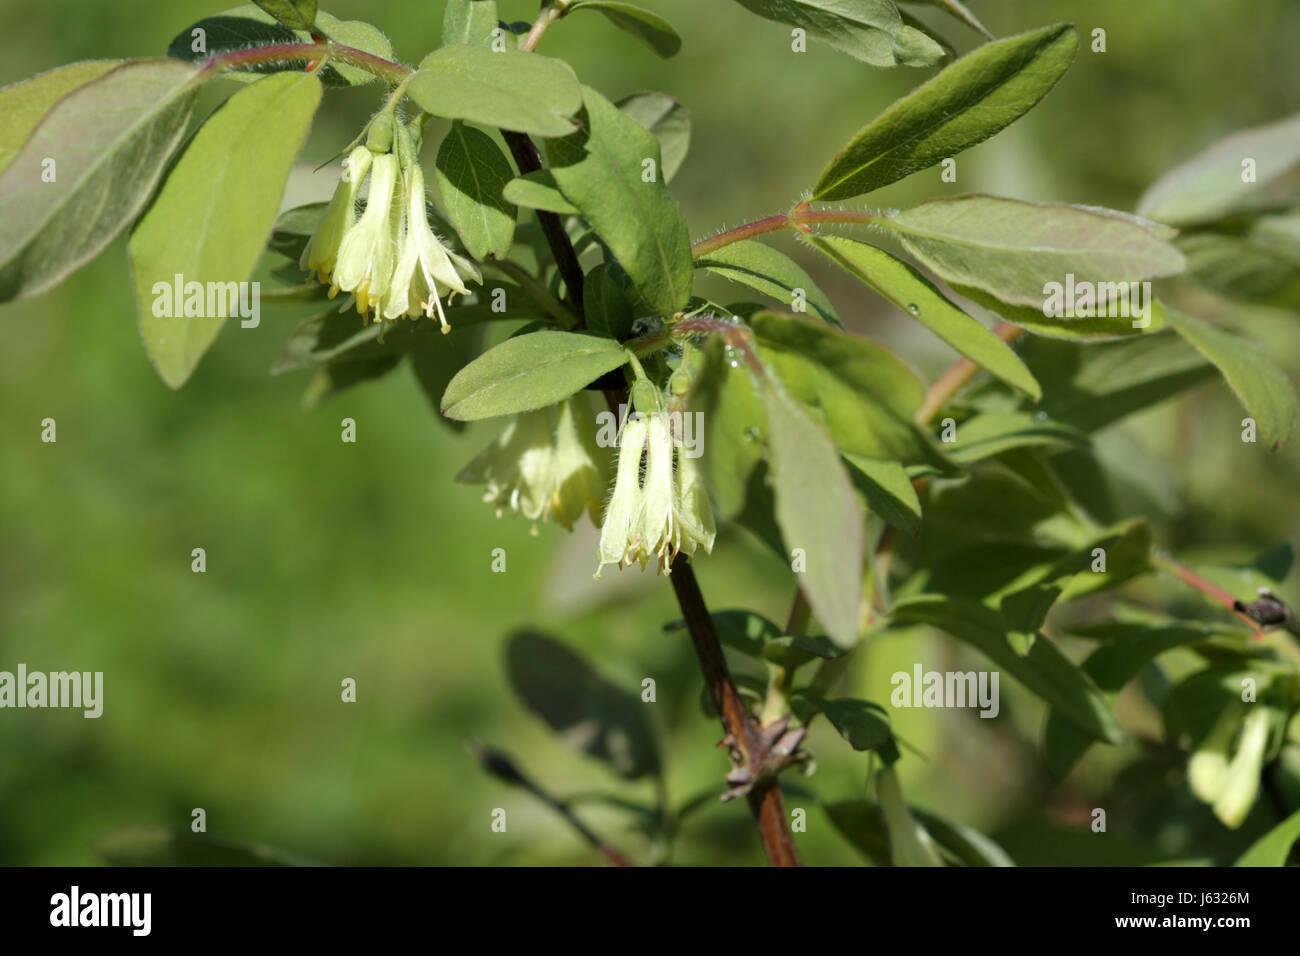 Delicati fiori gialli del caprifoglio sono commestibili su un ramo con foglie verdi fioriti Foto Stock